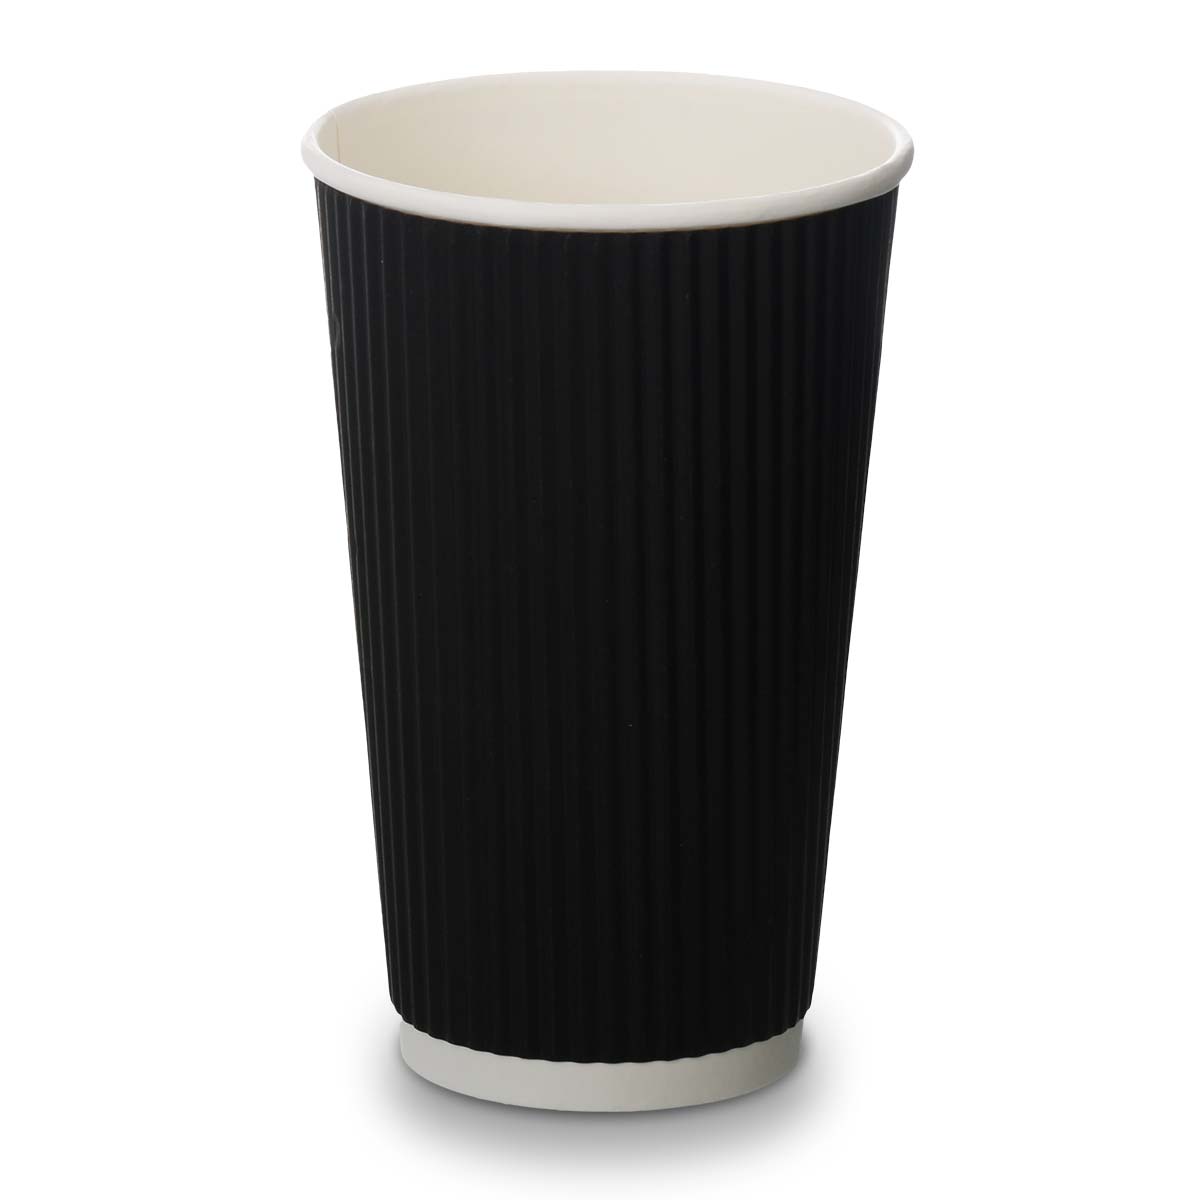 16oz Black Ripple Cups (500)